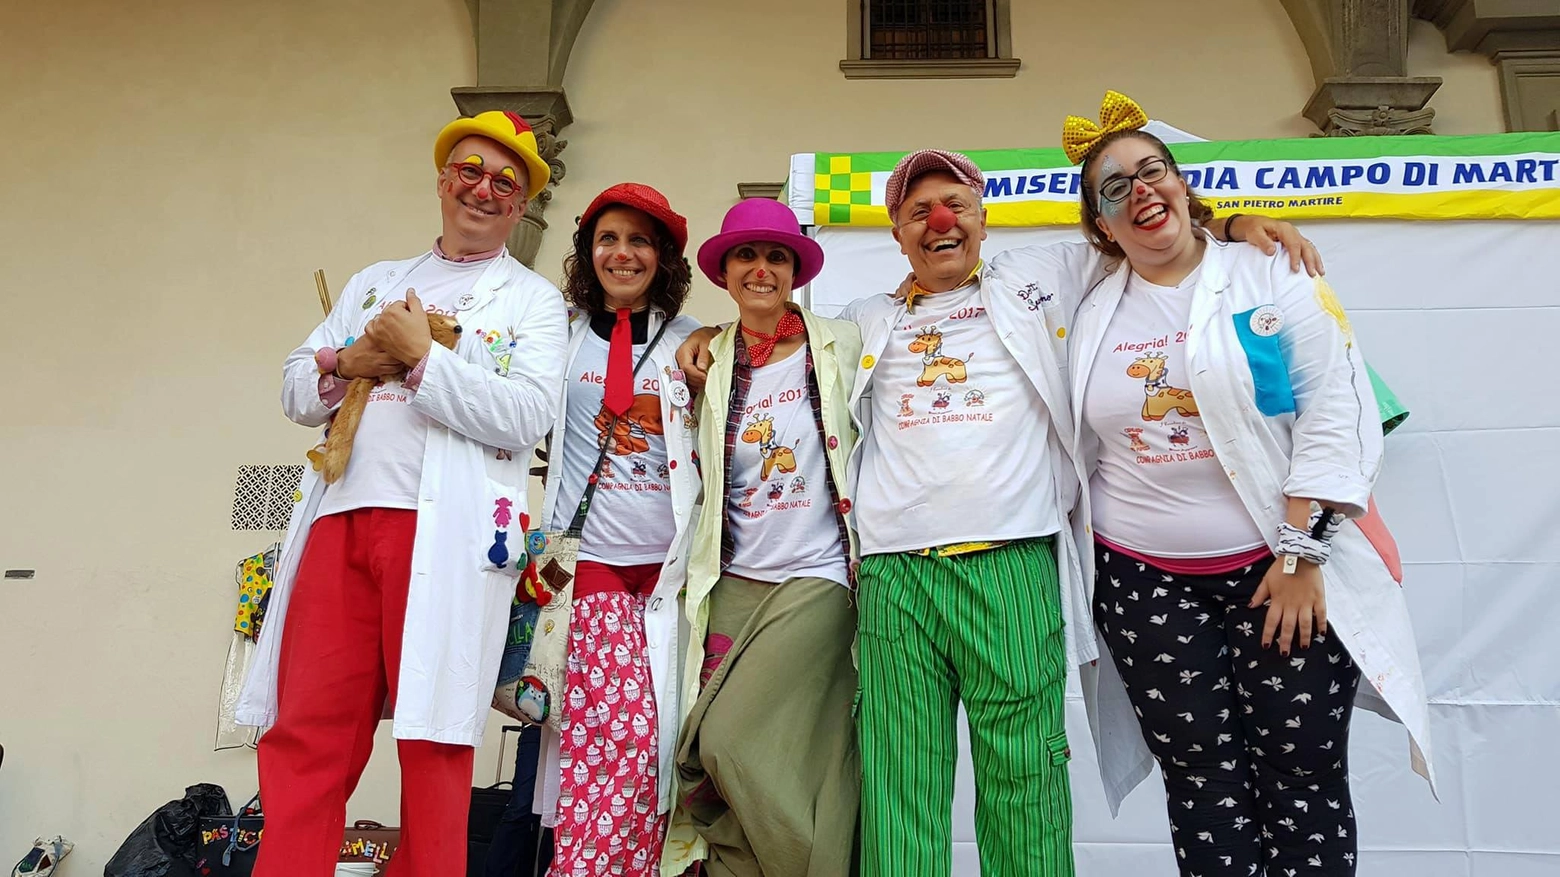 Piero Niccolini (pantaloni verdi) con i colleghi "Clown Care" 